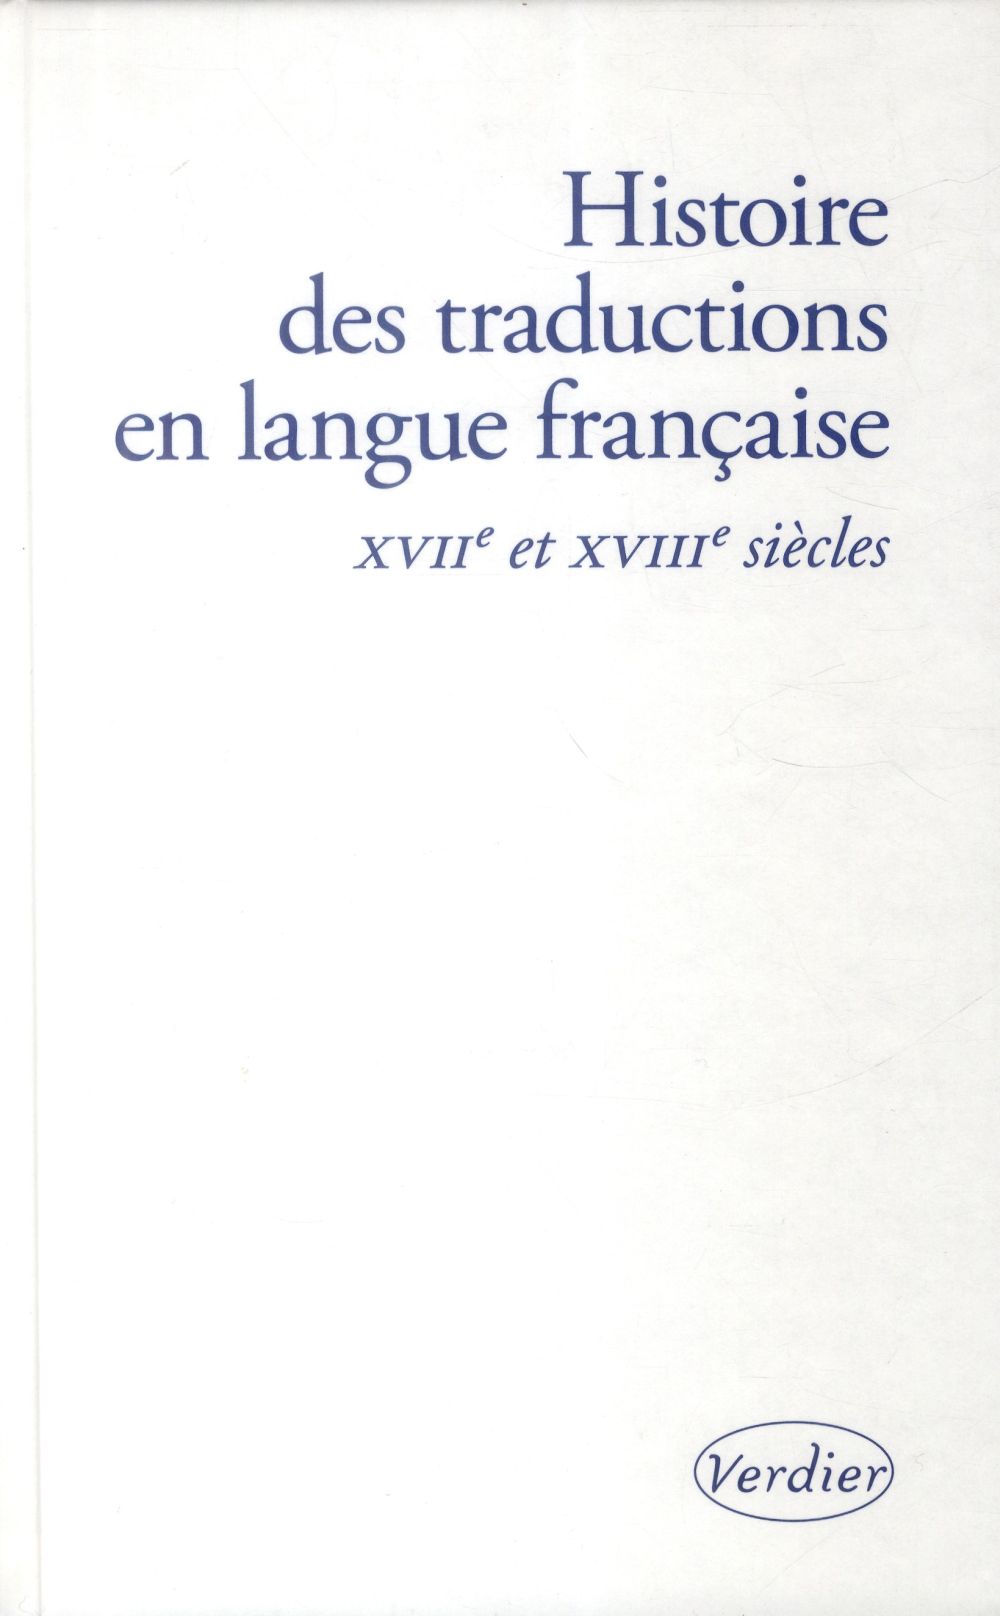 HISTOIRE DES TRADUCTIONS EN LANGUE FRANCAISE XVII XVIIIE